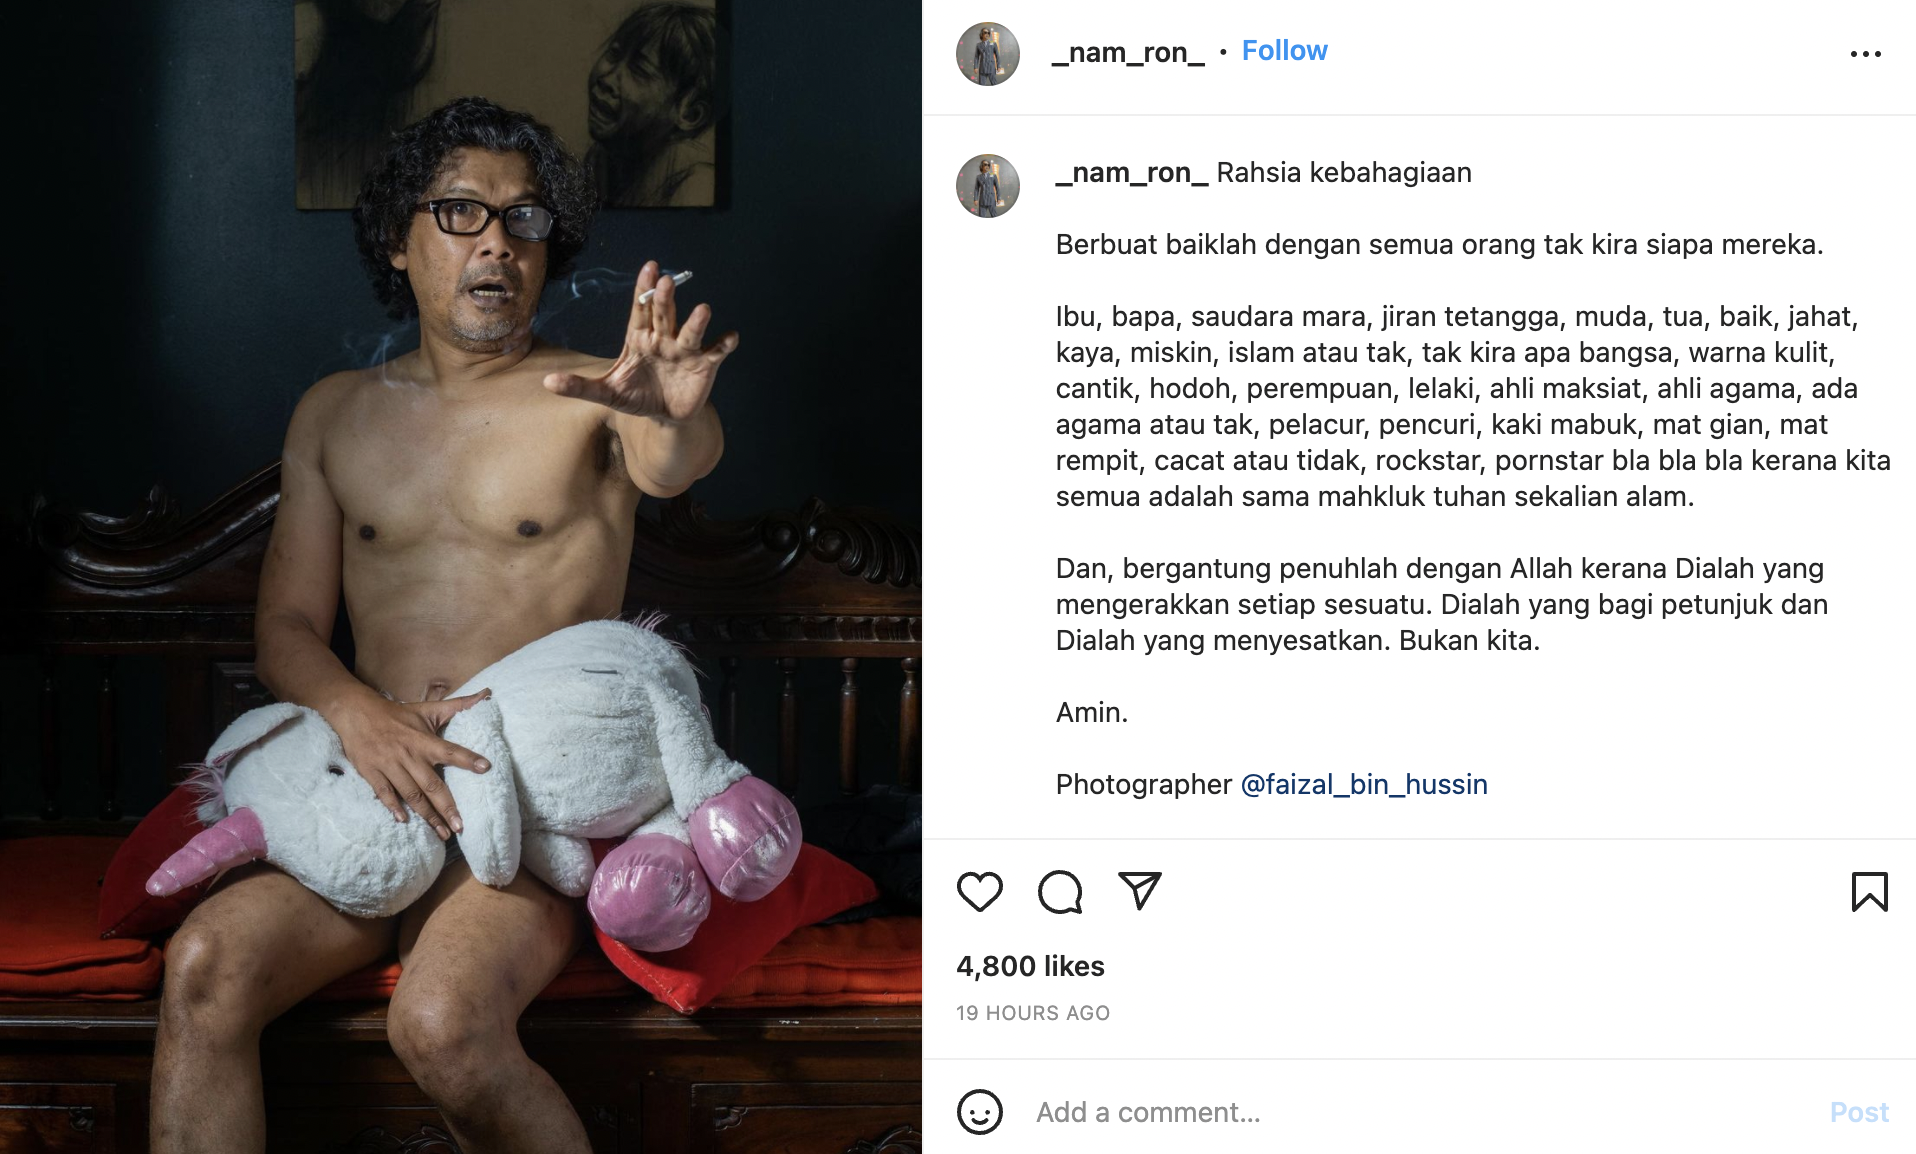 'Belanja' Gambar Separuh Bogel, Nam Ron Minta Netizen Tenang – 'Yang Dikatakan Akan Ke Neraka, Saya' 7